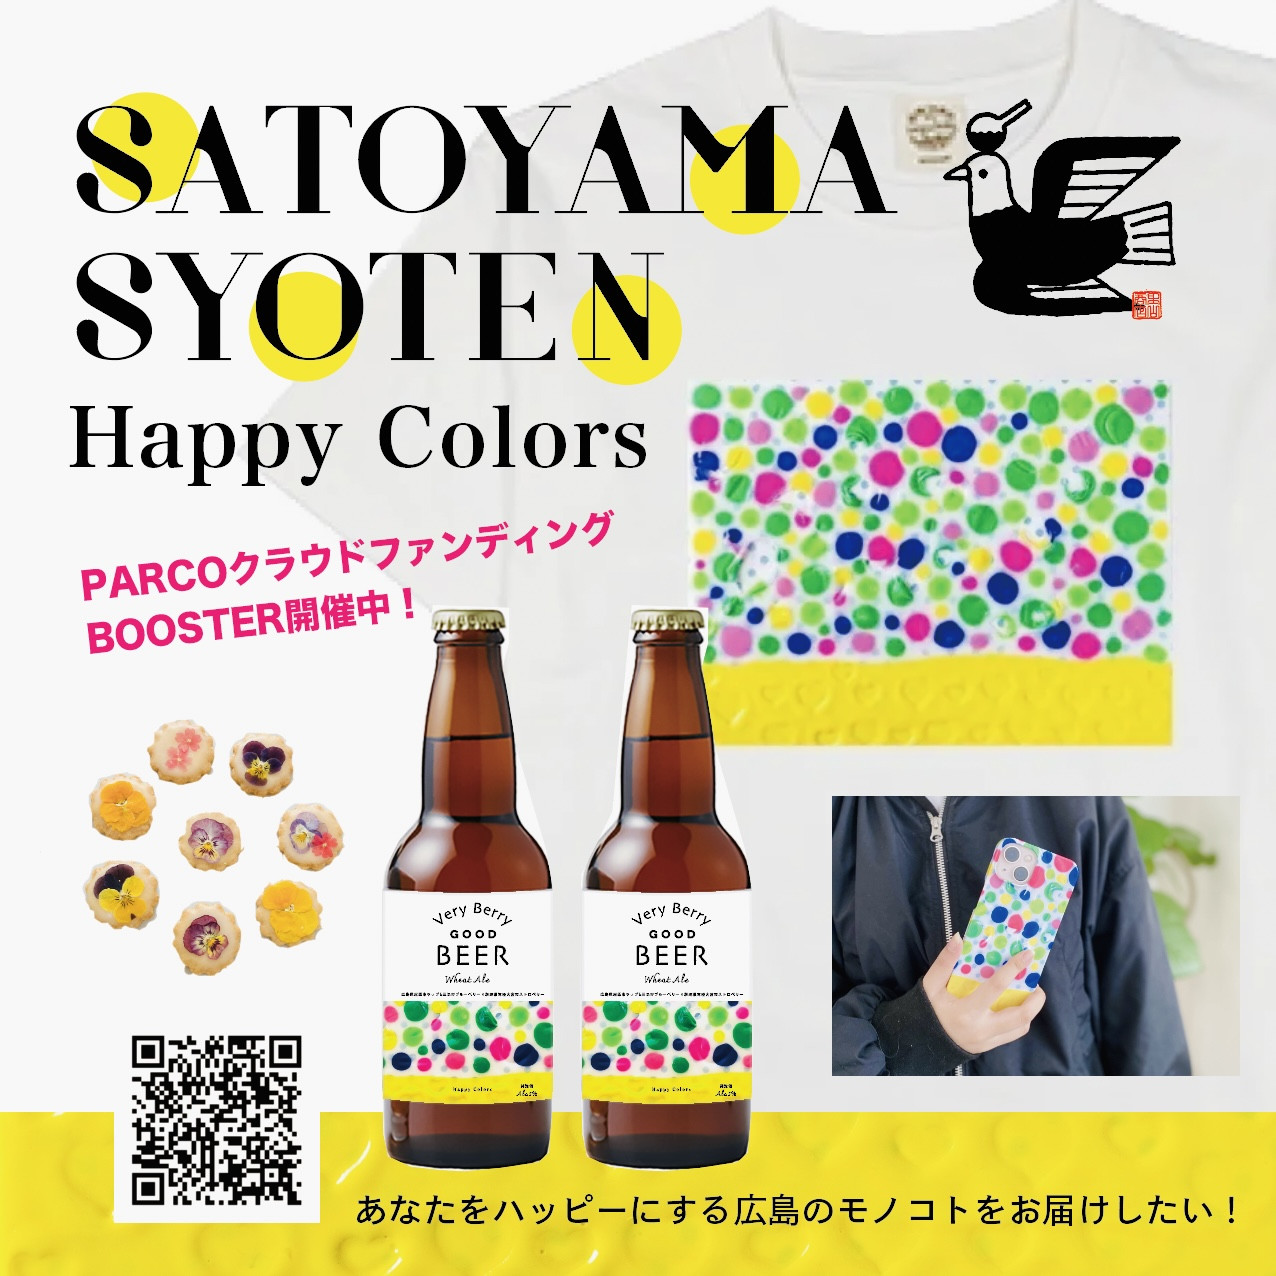 【Happy Colors】あなたをハッピーにする広島のモノコトをお届けしたい！